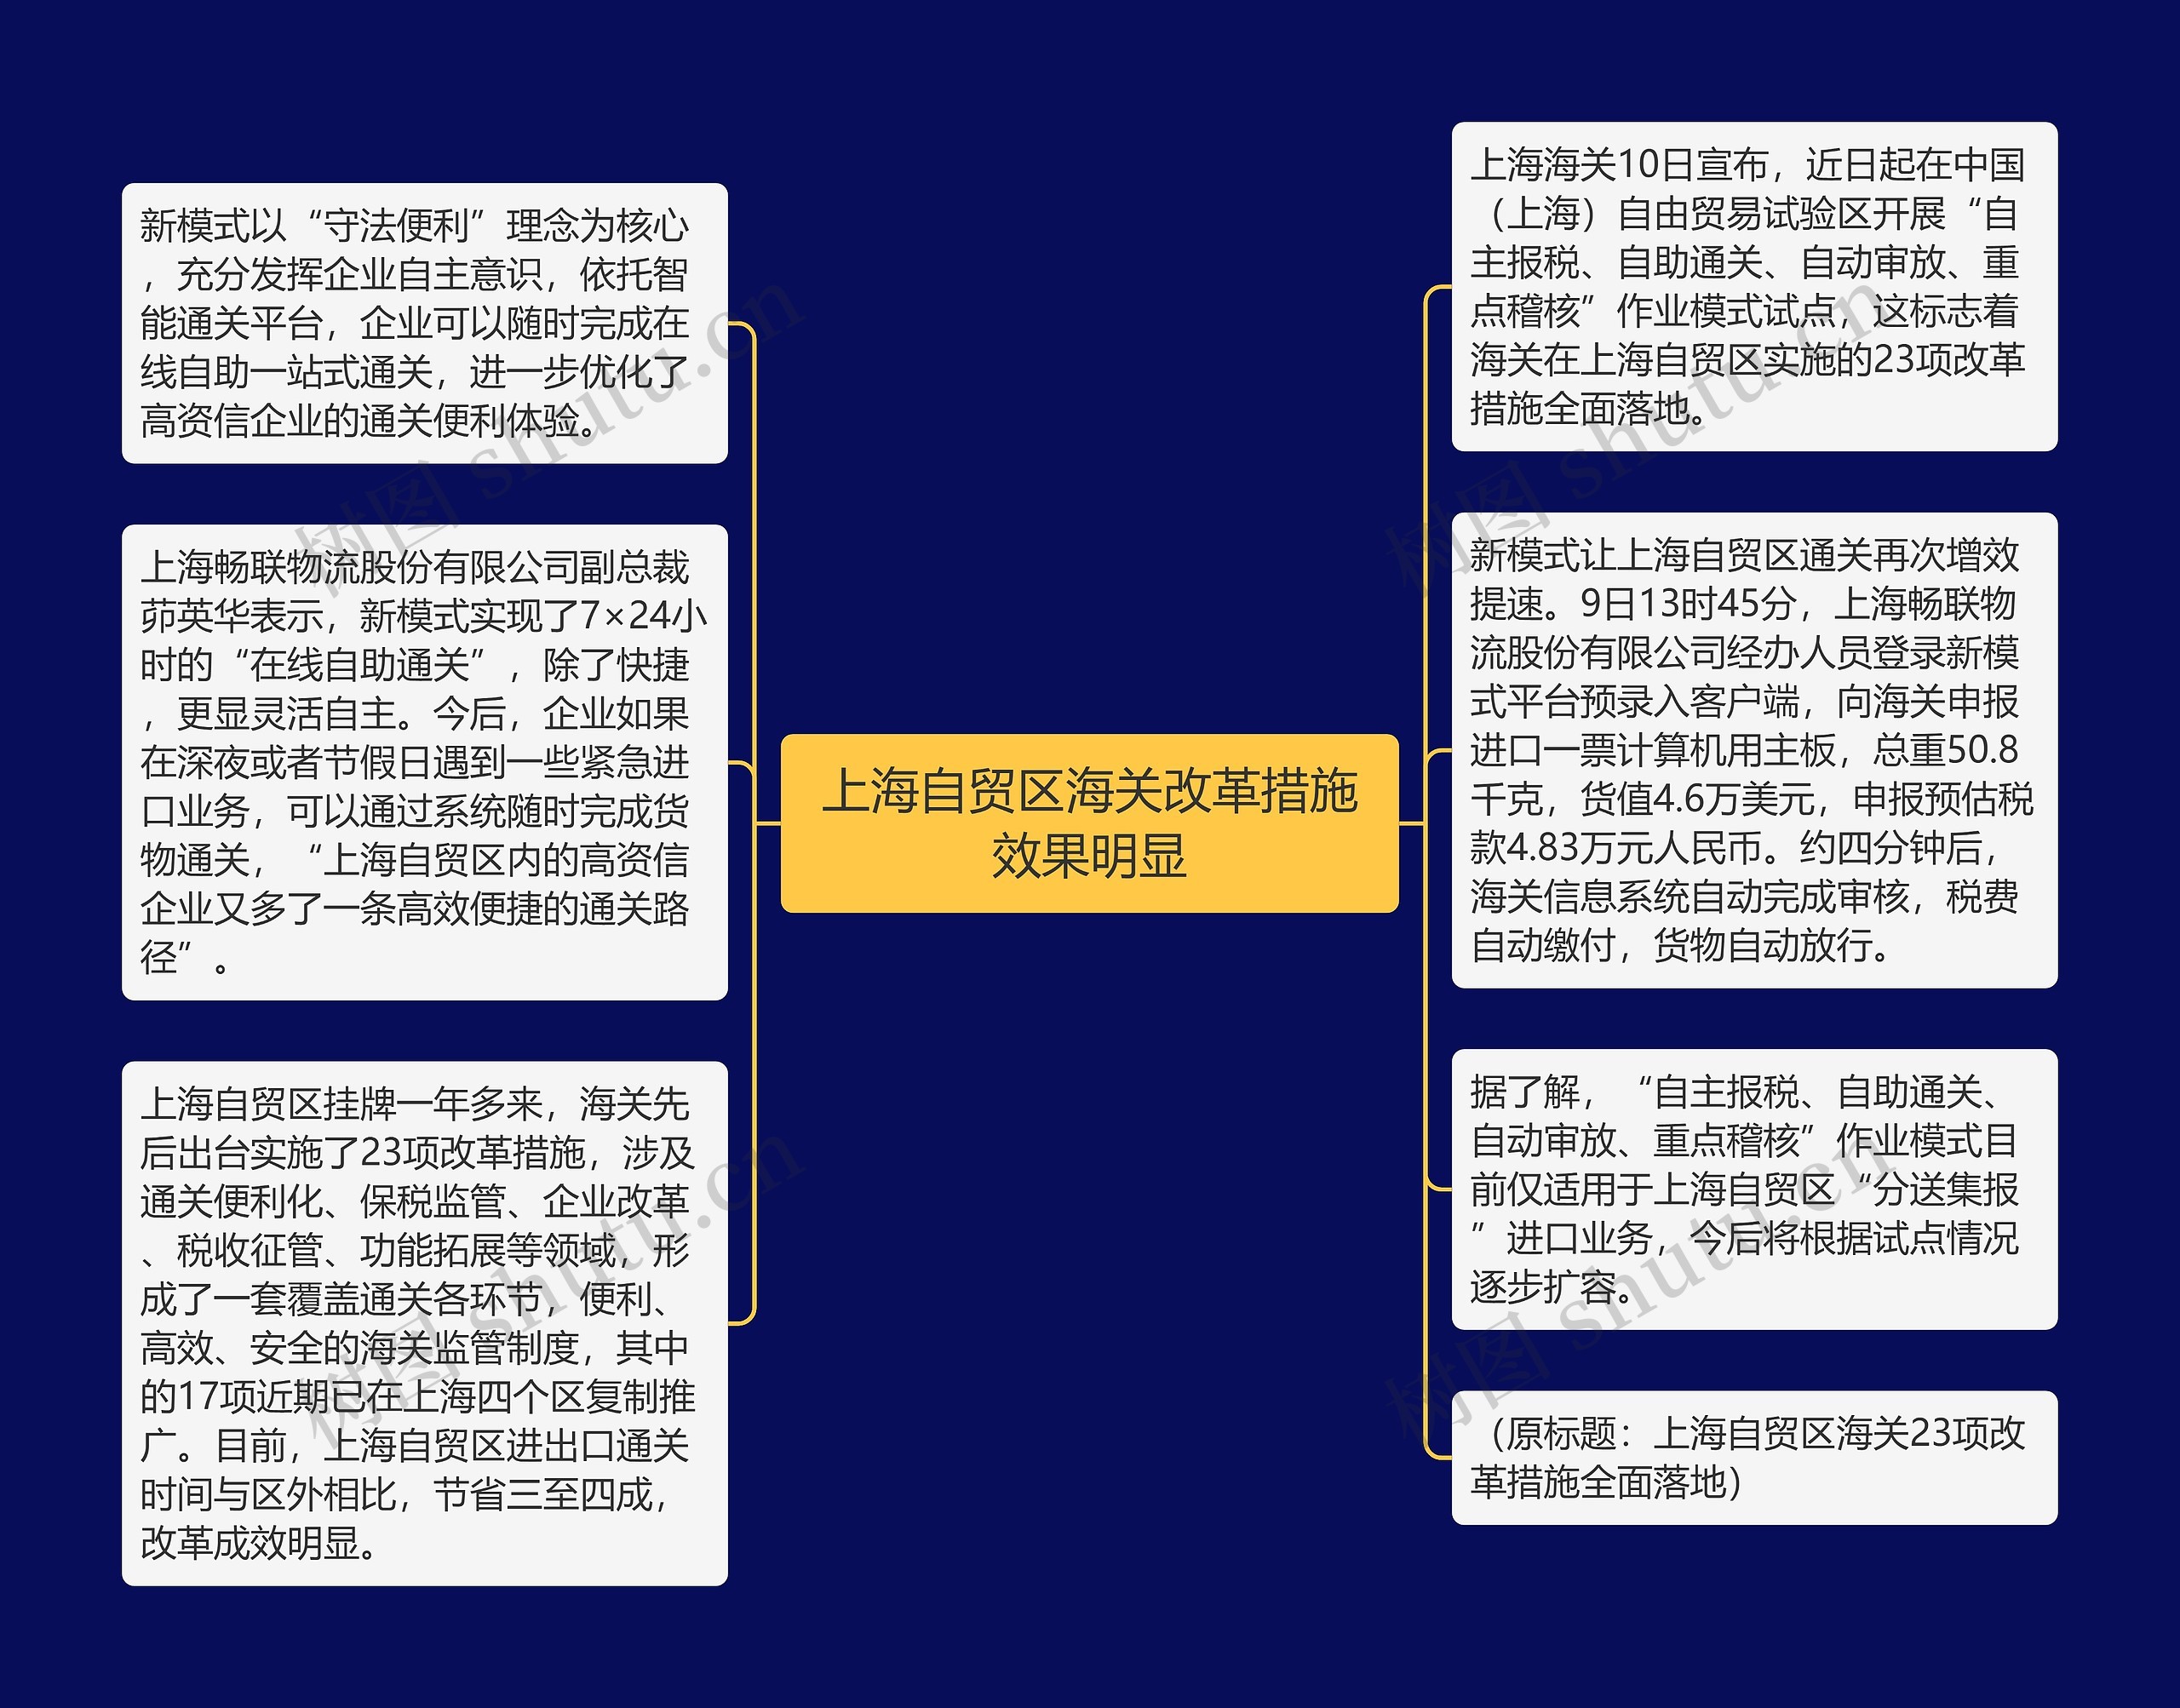 上海自贸区海关改革措施效果明显思维导图